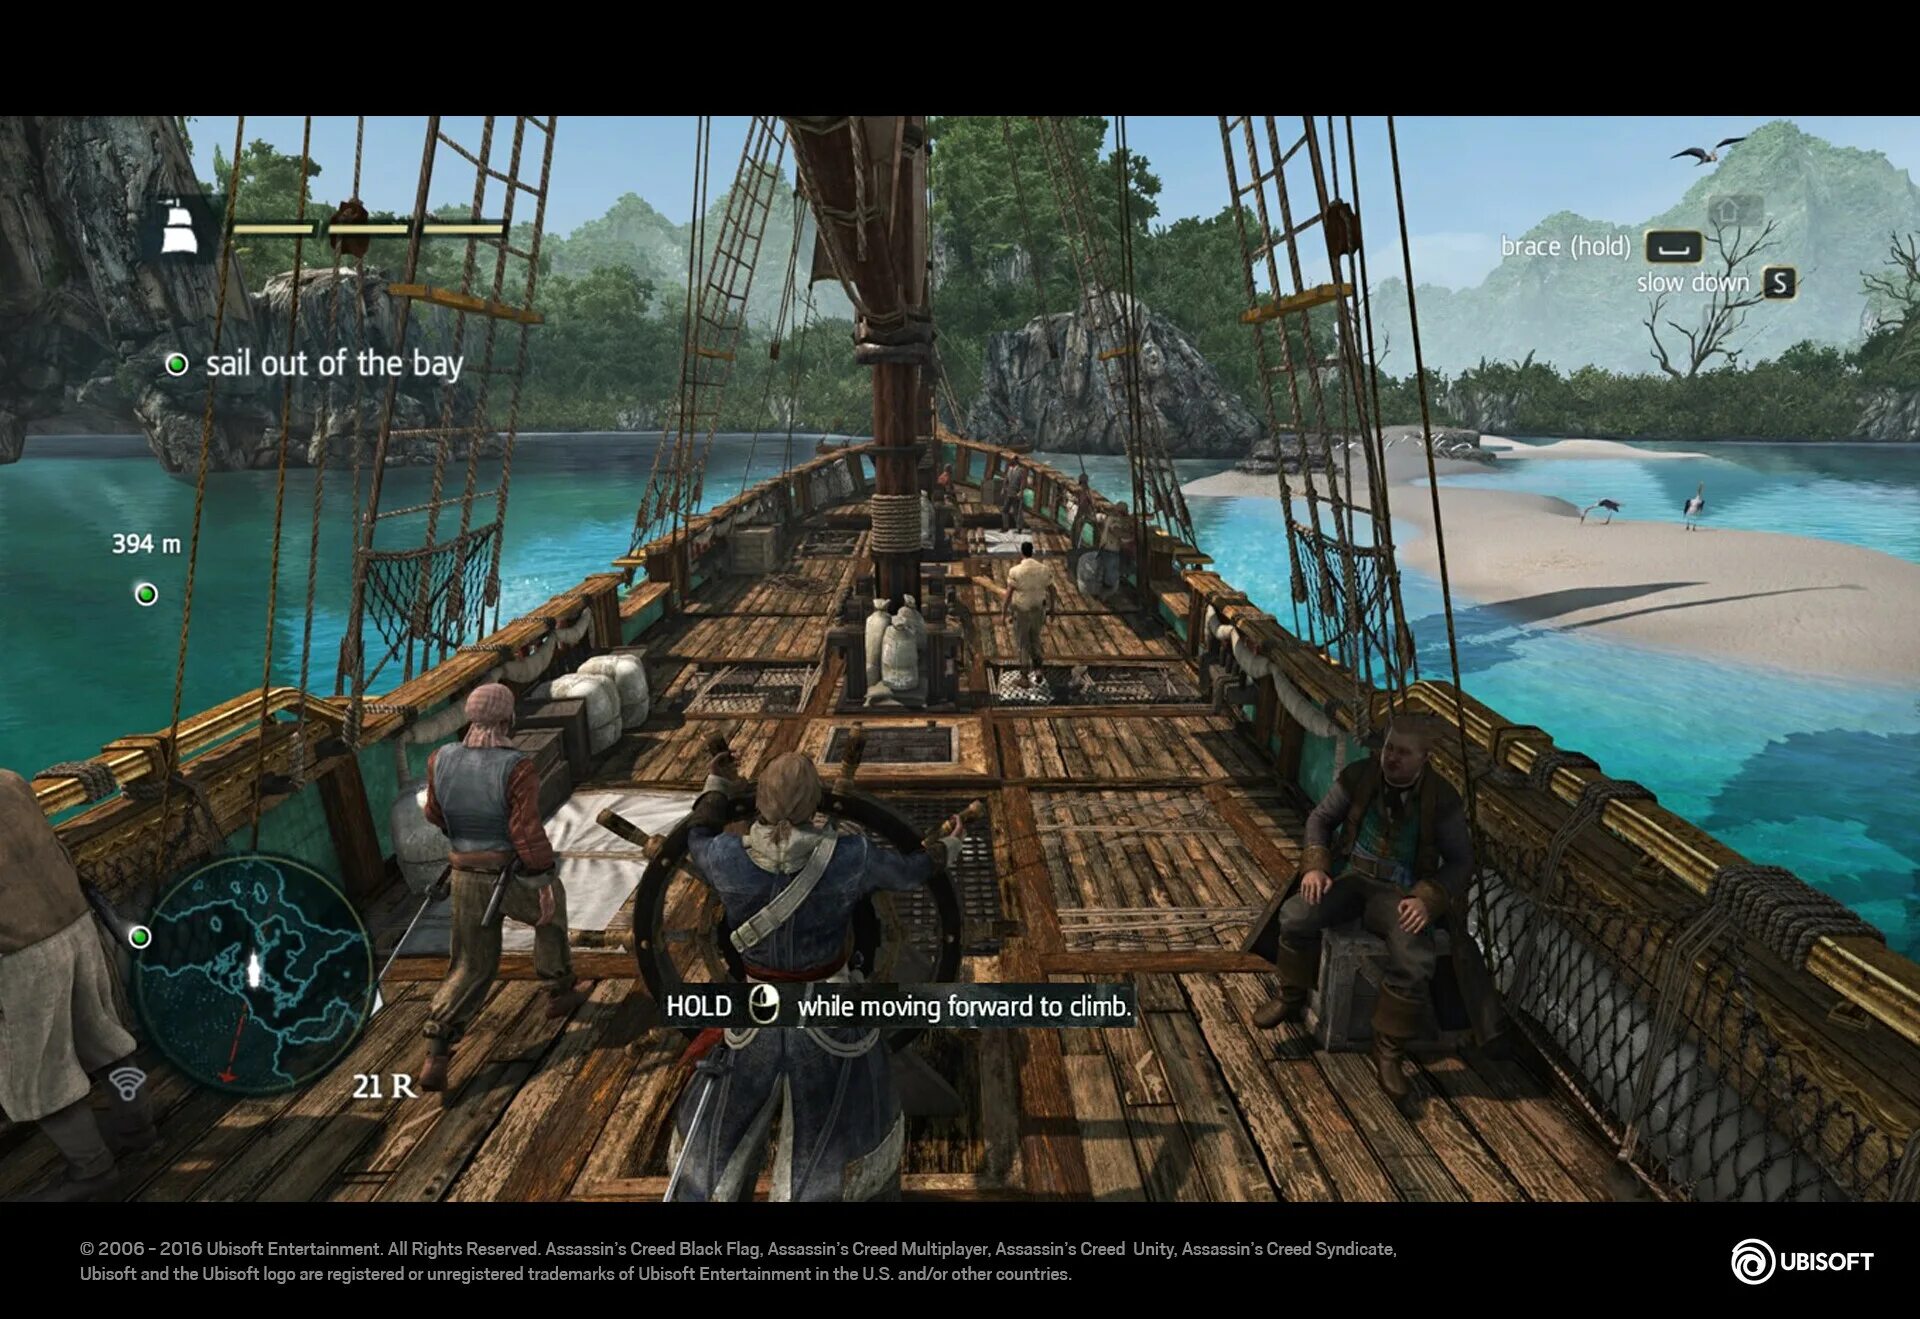 Ассасин 4 от механиков. Assassin's Creed 4 Black Flag геймплей. Assassin’s Creed IV: Black Flag – 2013. Ассасин Крид 4 Блэк флаг геймплей. Ассасин Крид черный флаг геймплей.